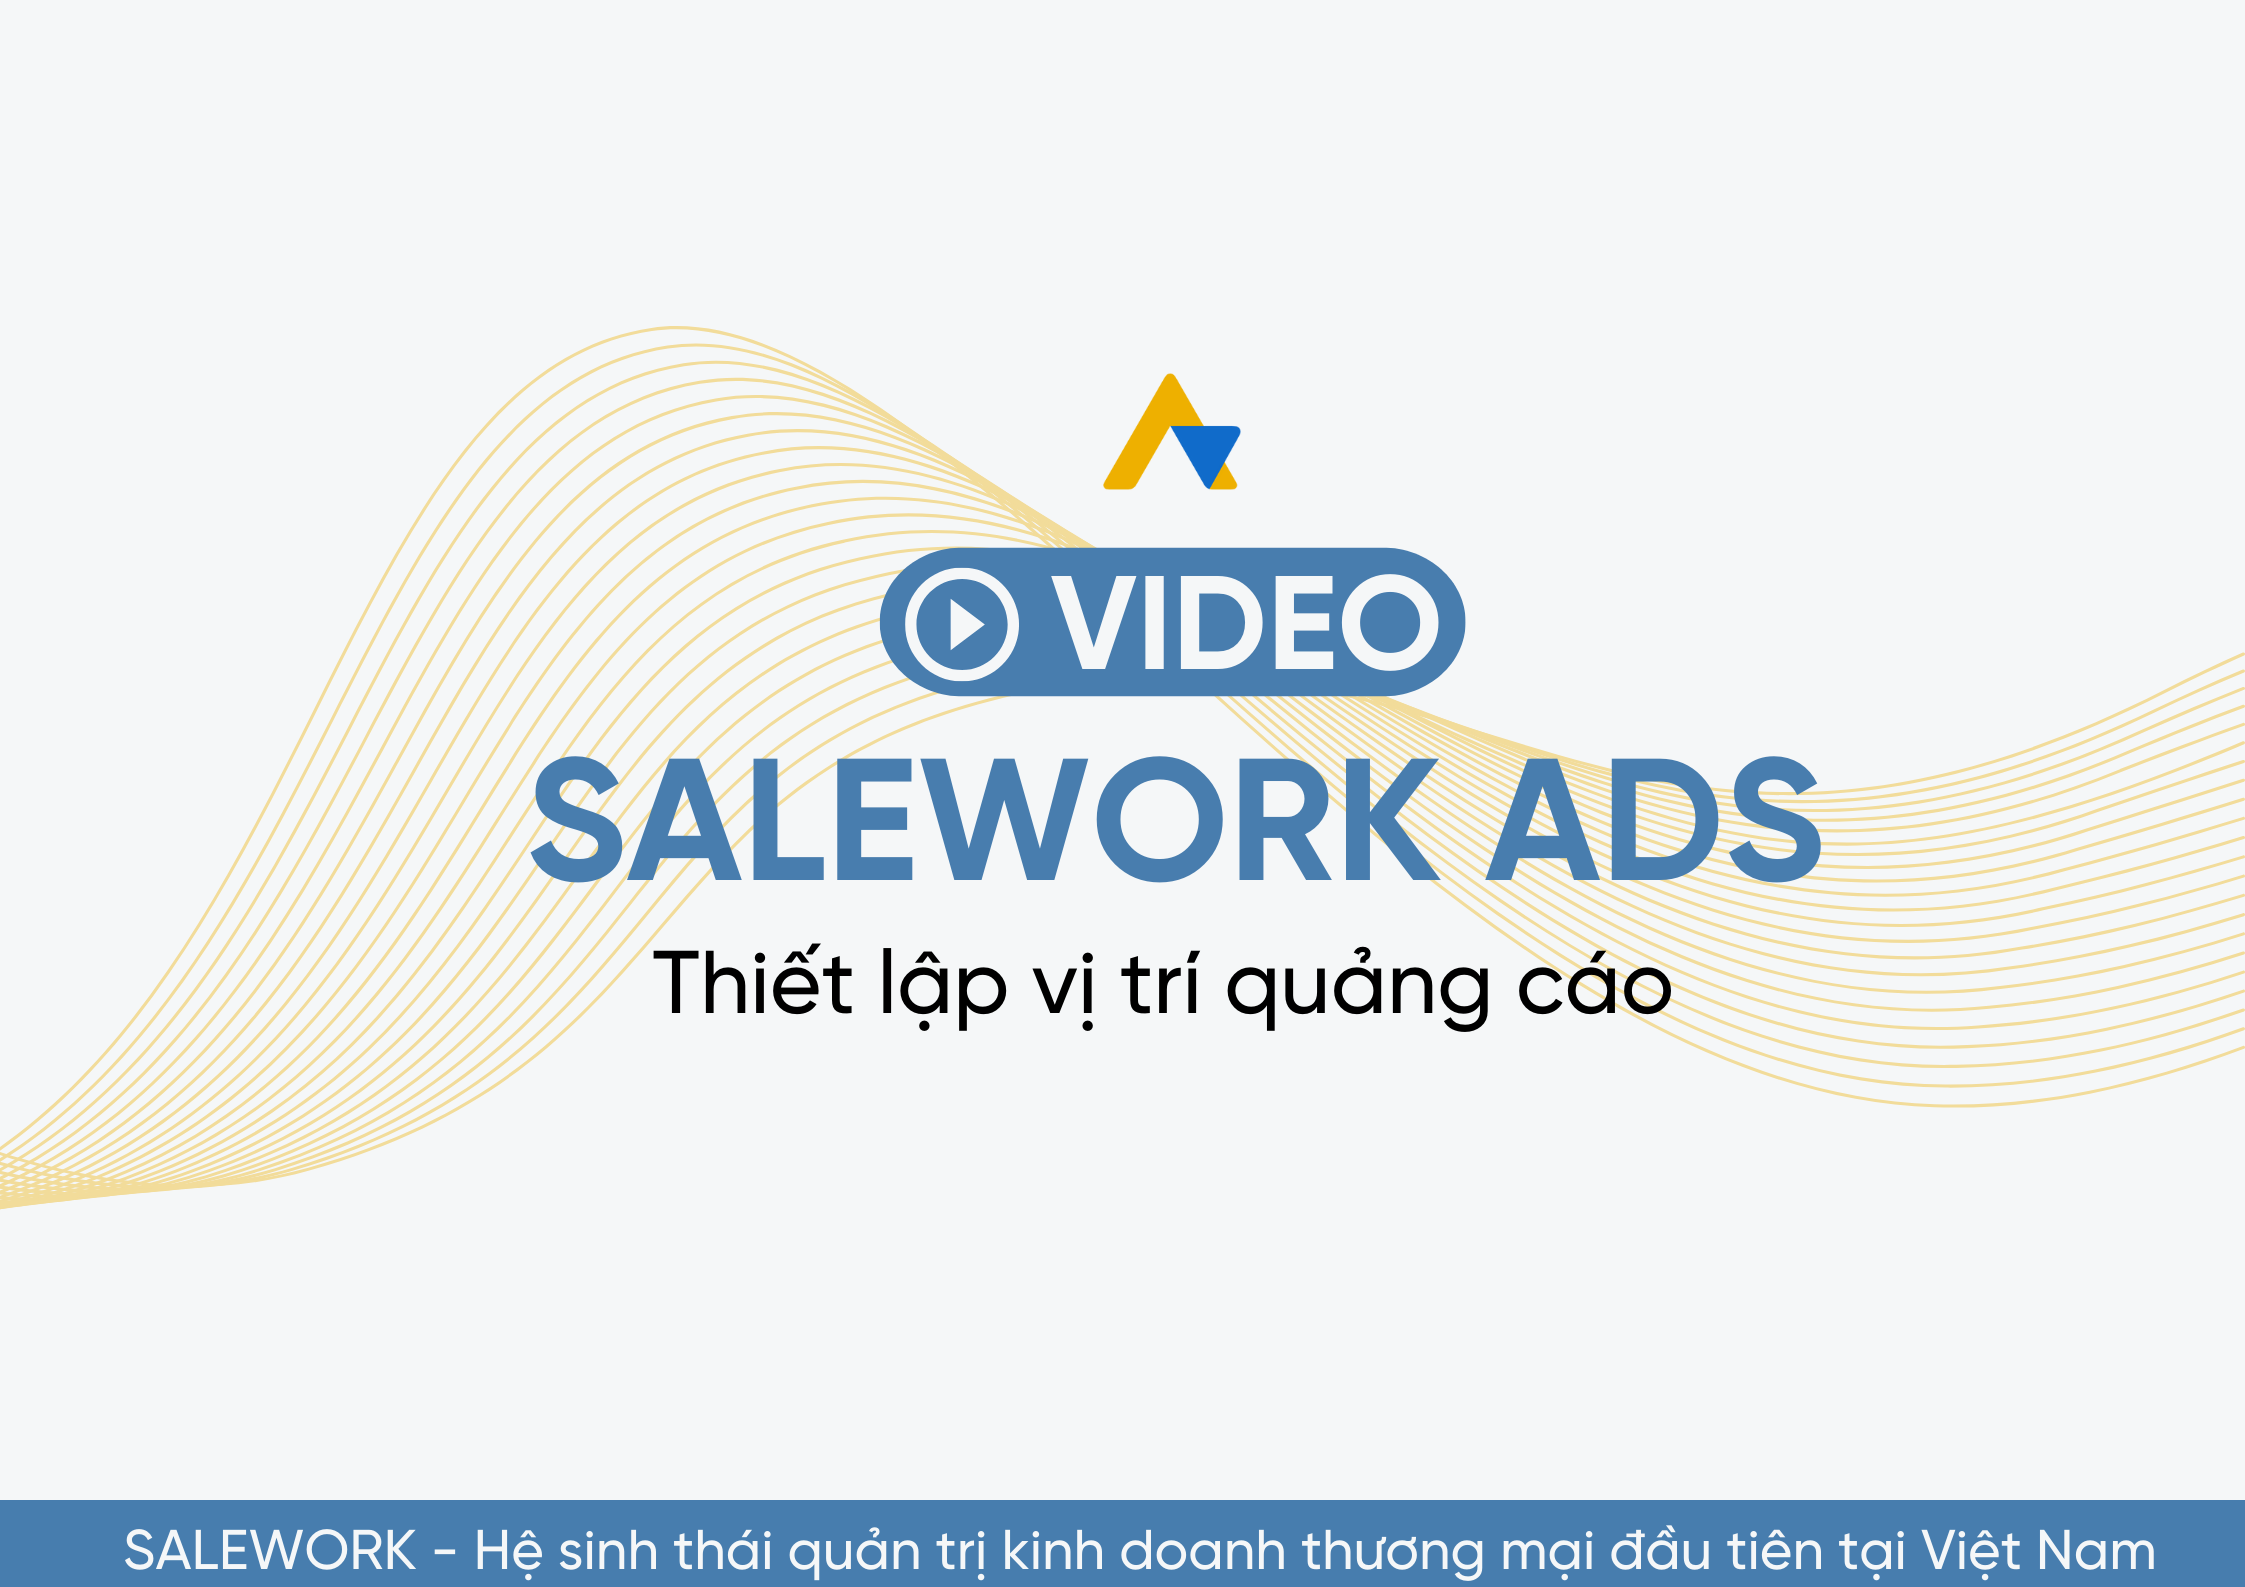 [VIDEO] Thiết lập vị trí quảng cáo tại Salework Ads - 12